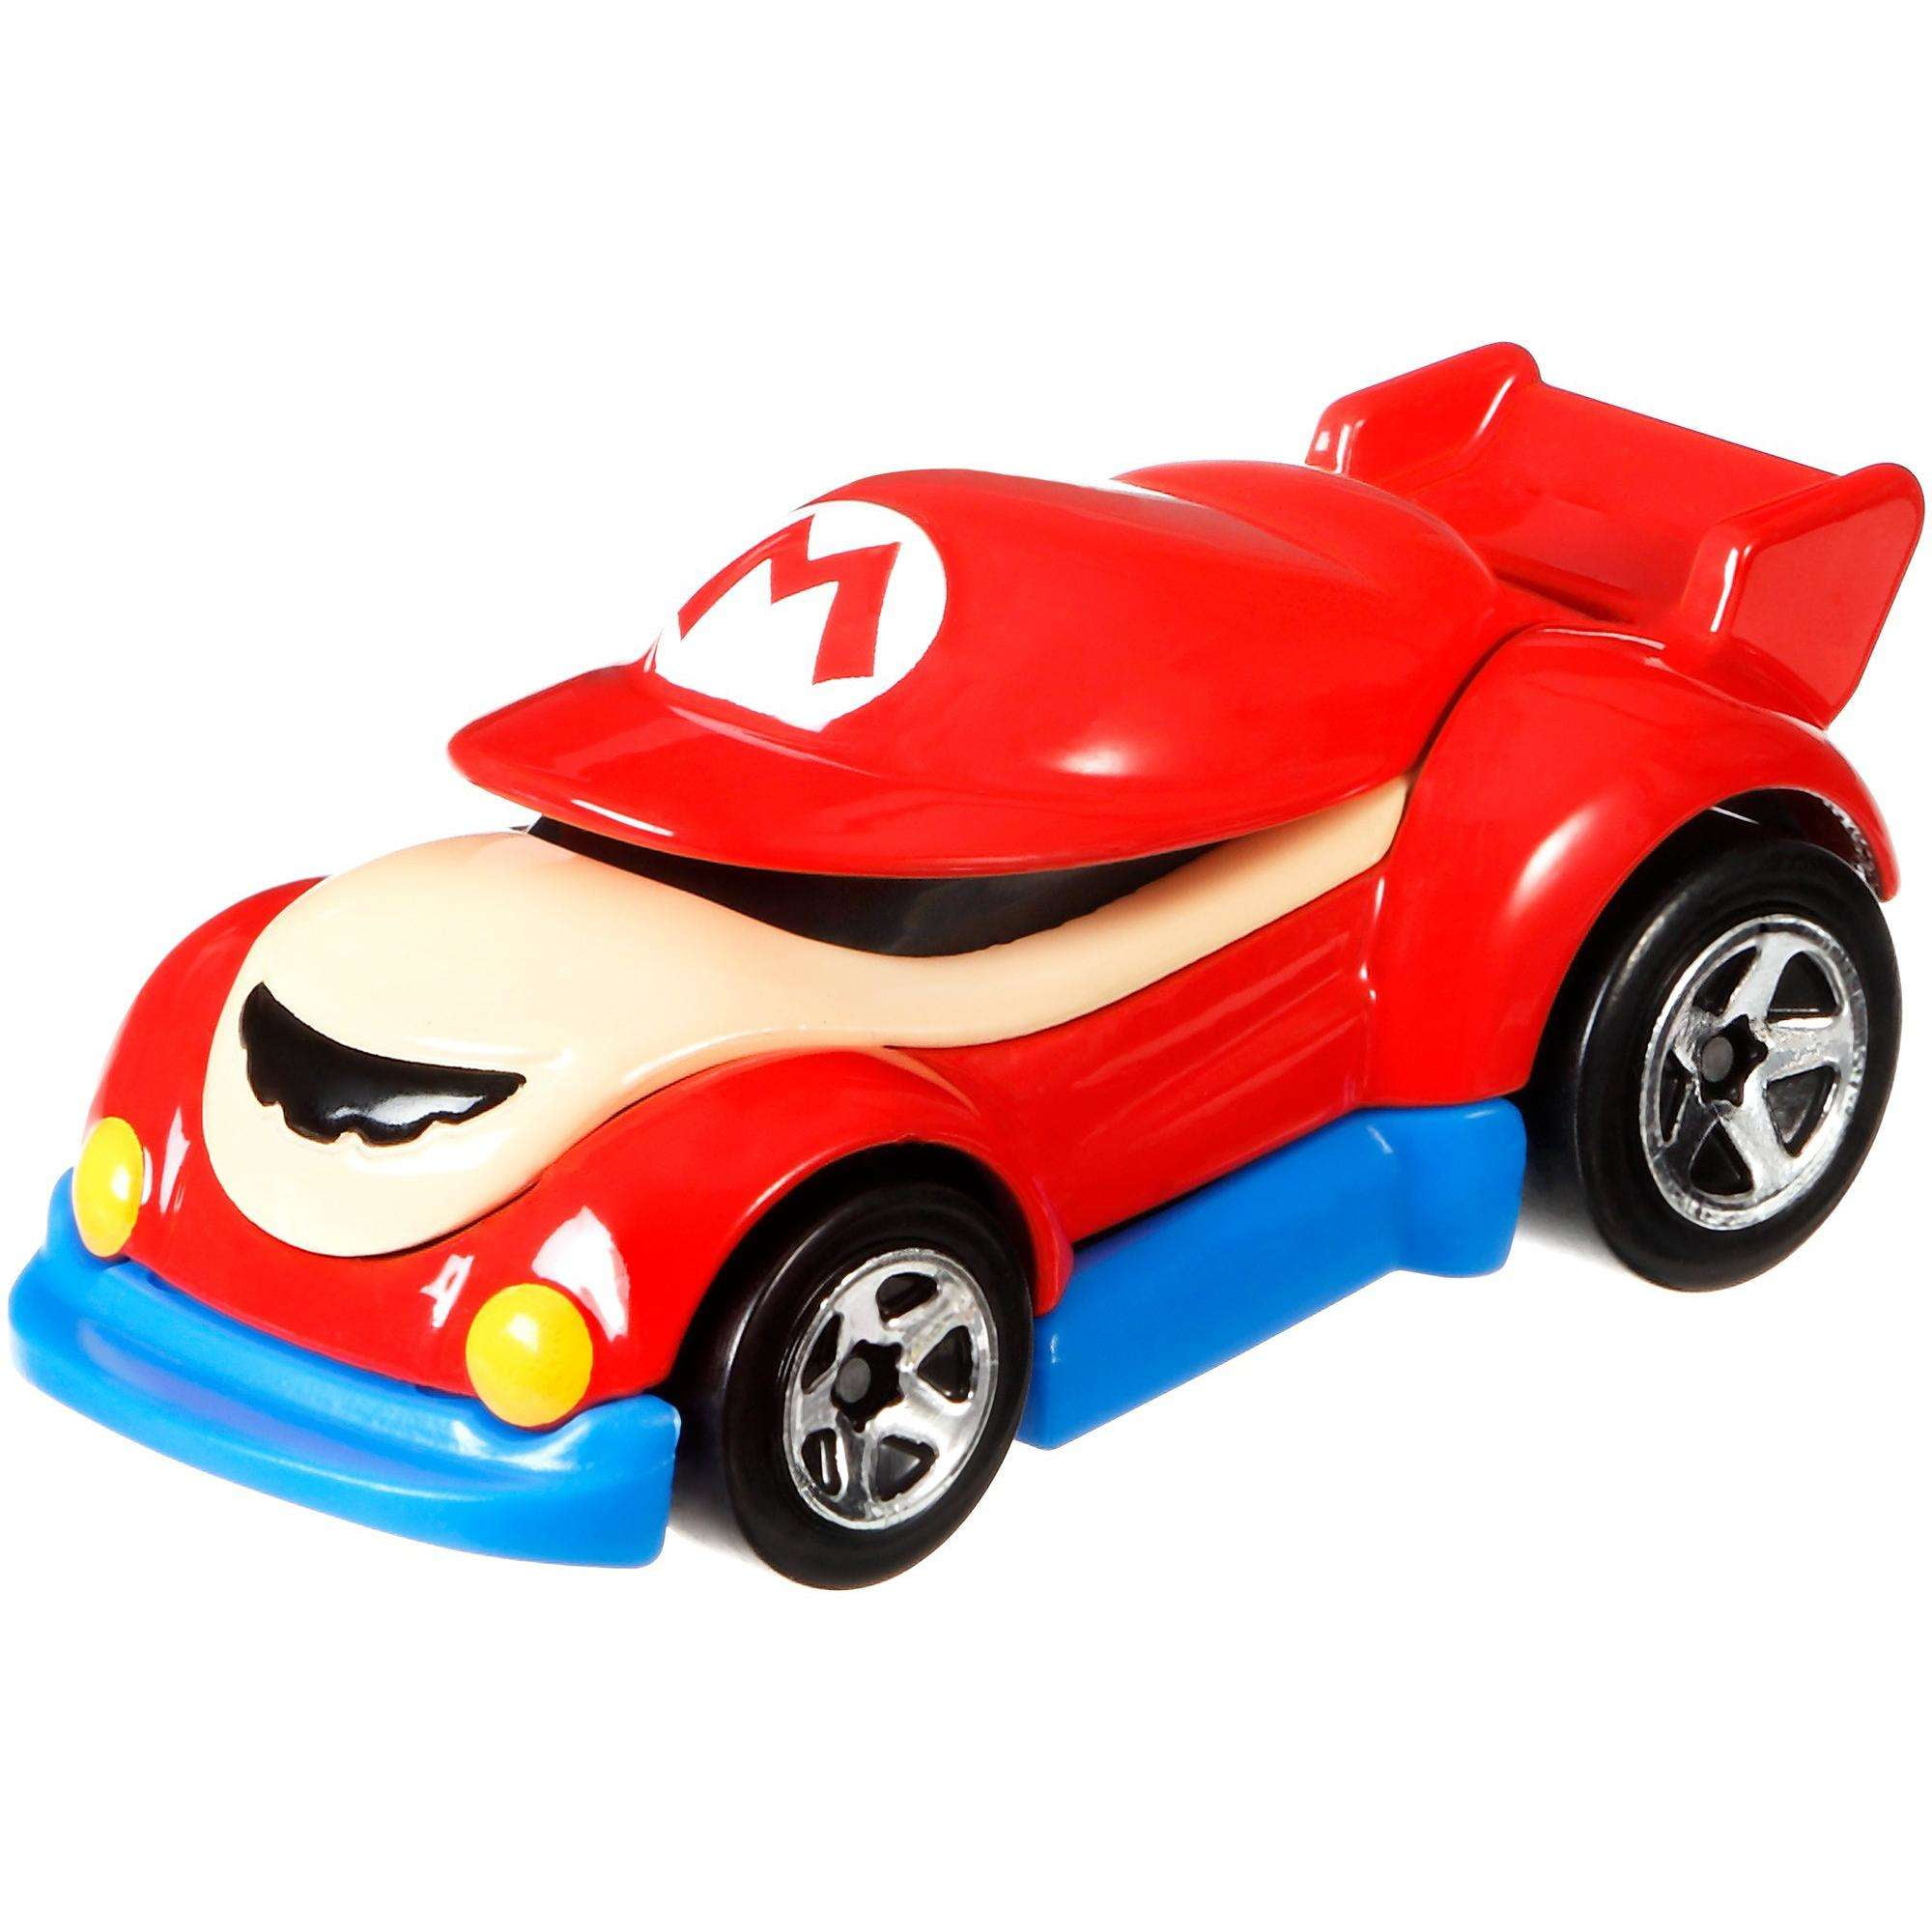 Hot Wheels Super Mario Character Car Play Vehicle 0896